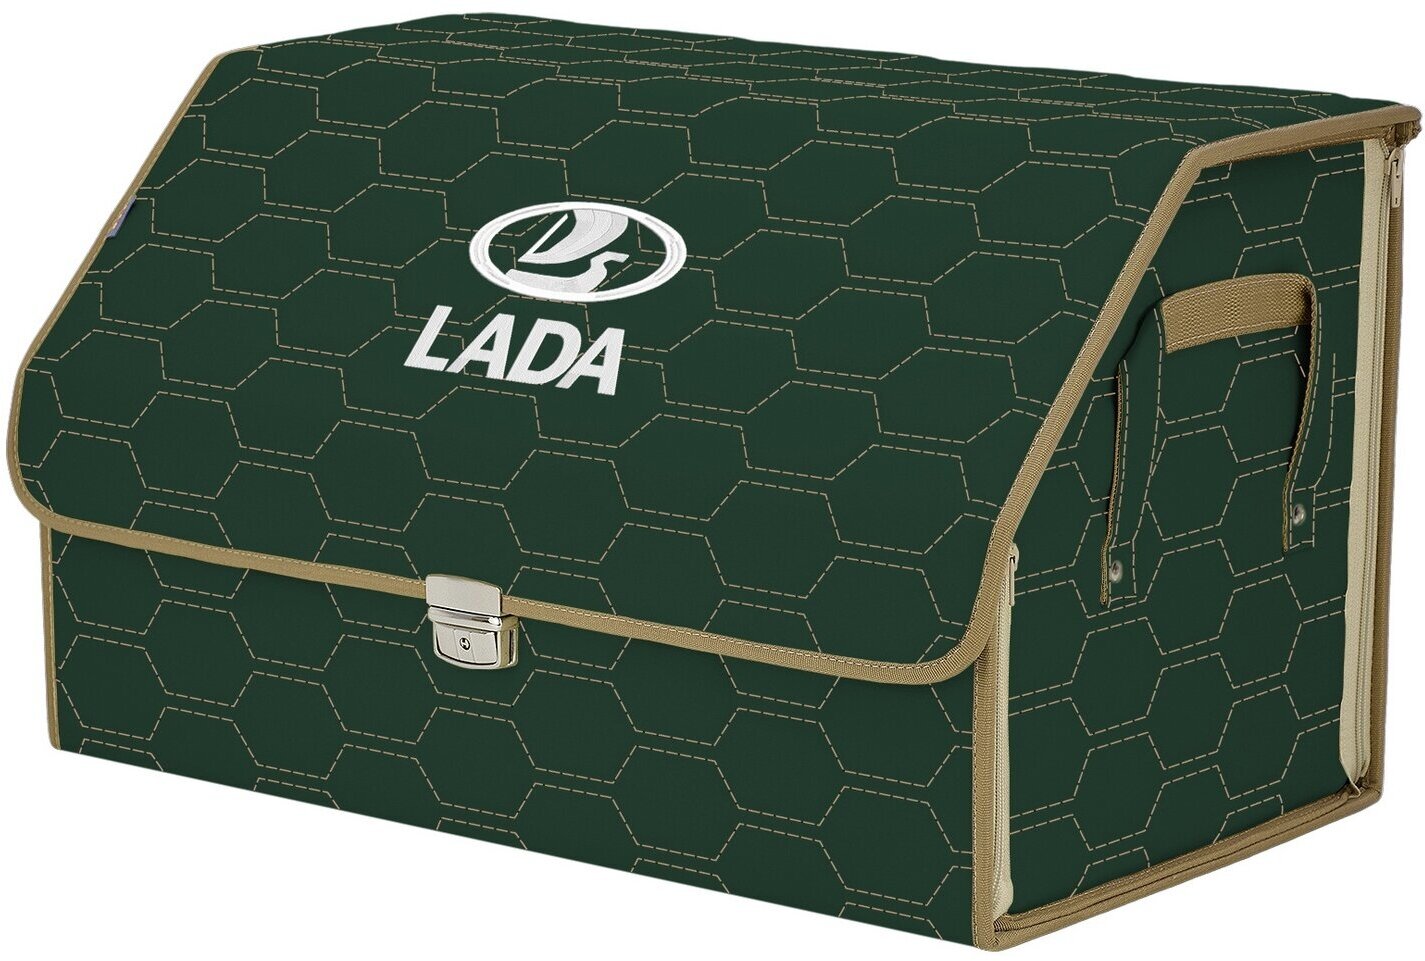 Органайзер-саквояж в багажник "Союз Премиум" (размер XL). Цвет: зеленый с бежевой прострочкой Соты и вышивкой LADA (лада).